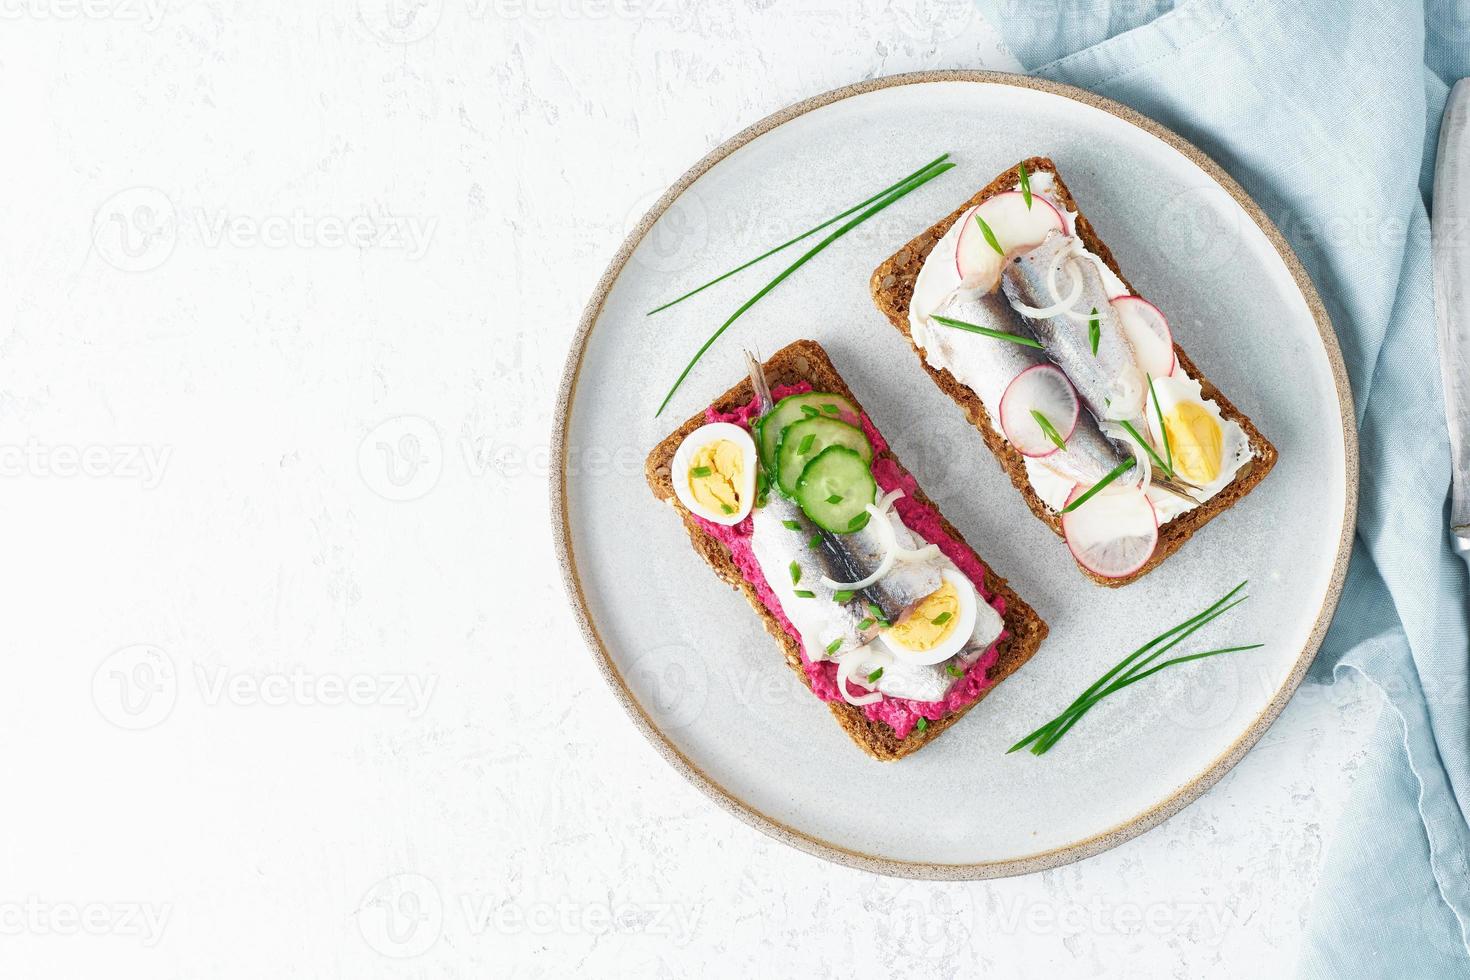 smorrebrod de poisson salé, ensemble de cinq sandwichs danois traditionnels. pain de seigle noir photo